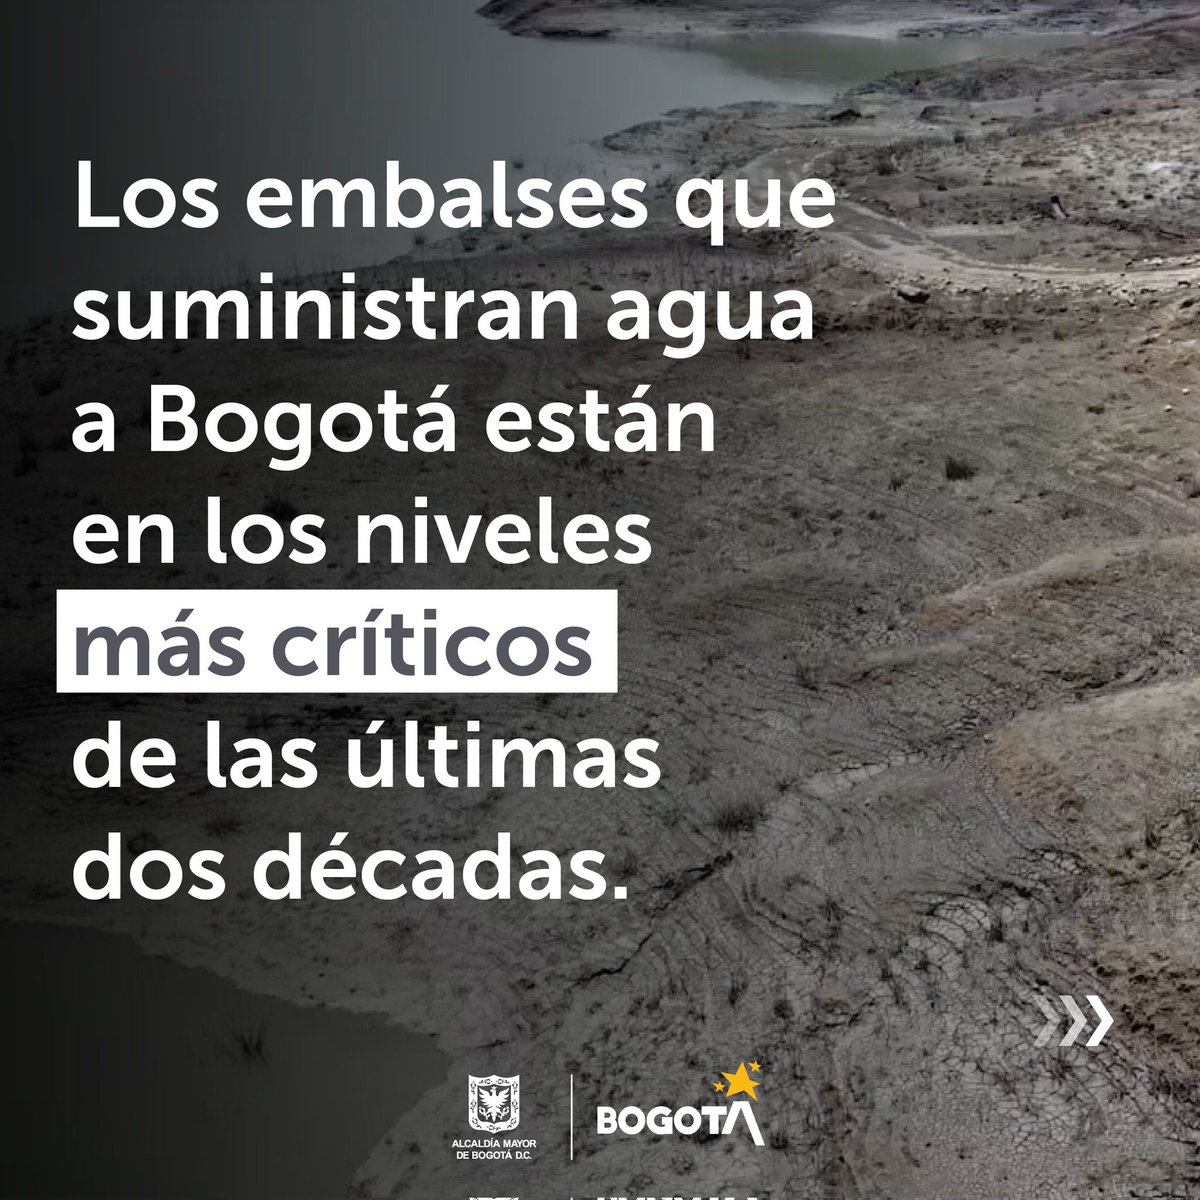 ¡ATENCIÓN! 💧 Los embalses de Bogotá están experimentando una disminución en sus niveles de agua debido al fenómeno de El Niño. Te invitamos a cuidar y consumir responsablemente el agua. #JuntosPorElAgua